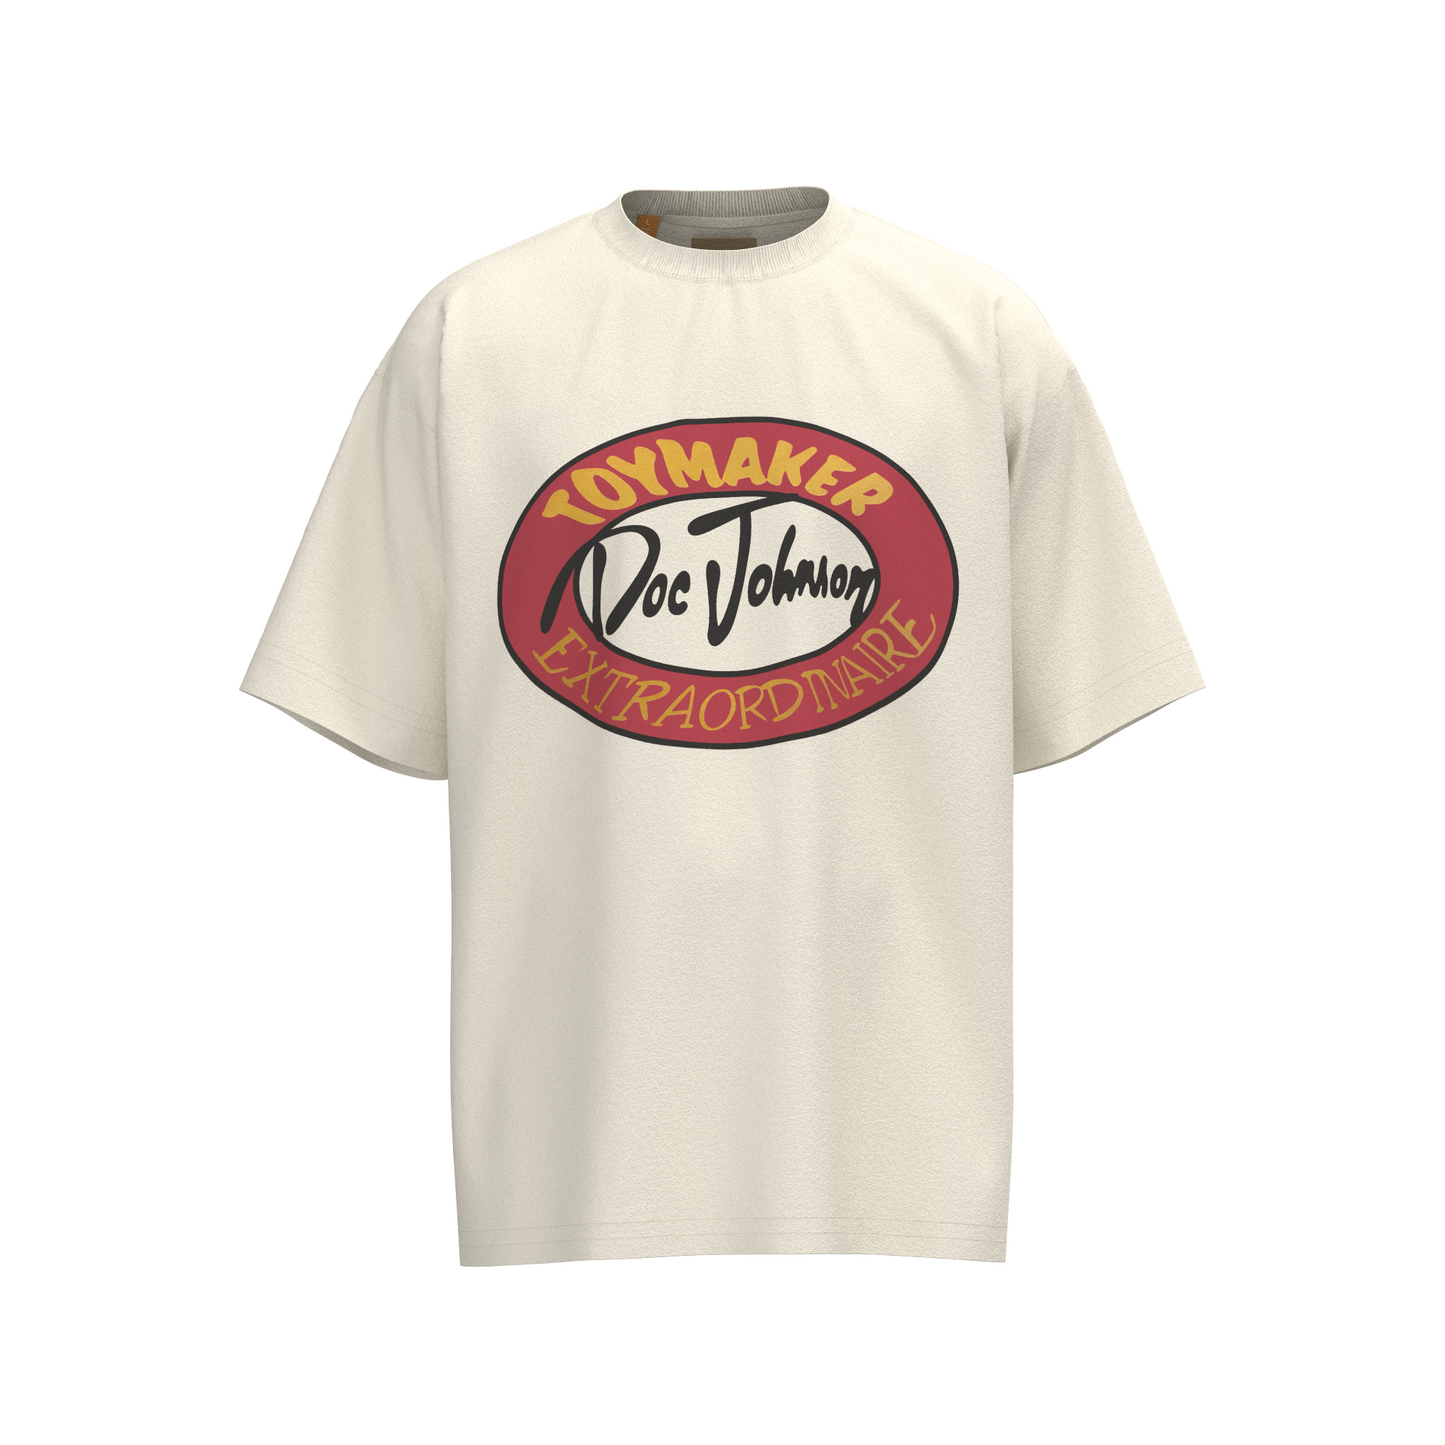 GALLERY DEPT 2024 New T-shirt  D64